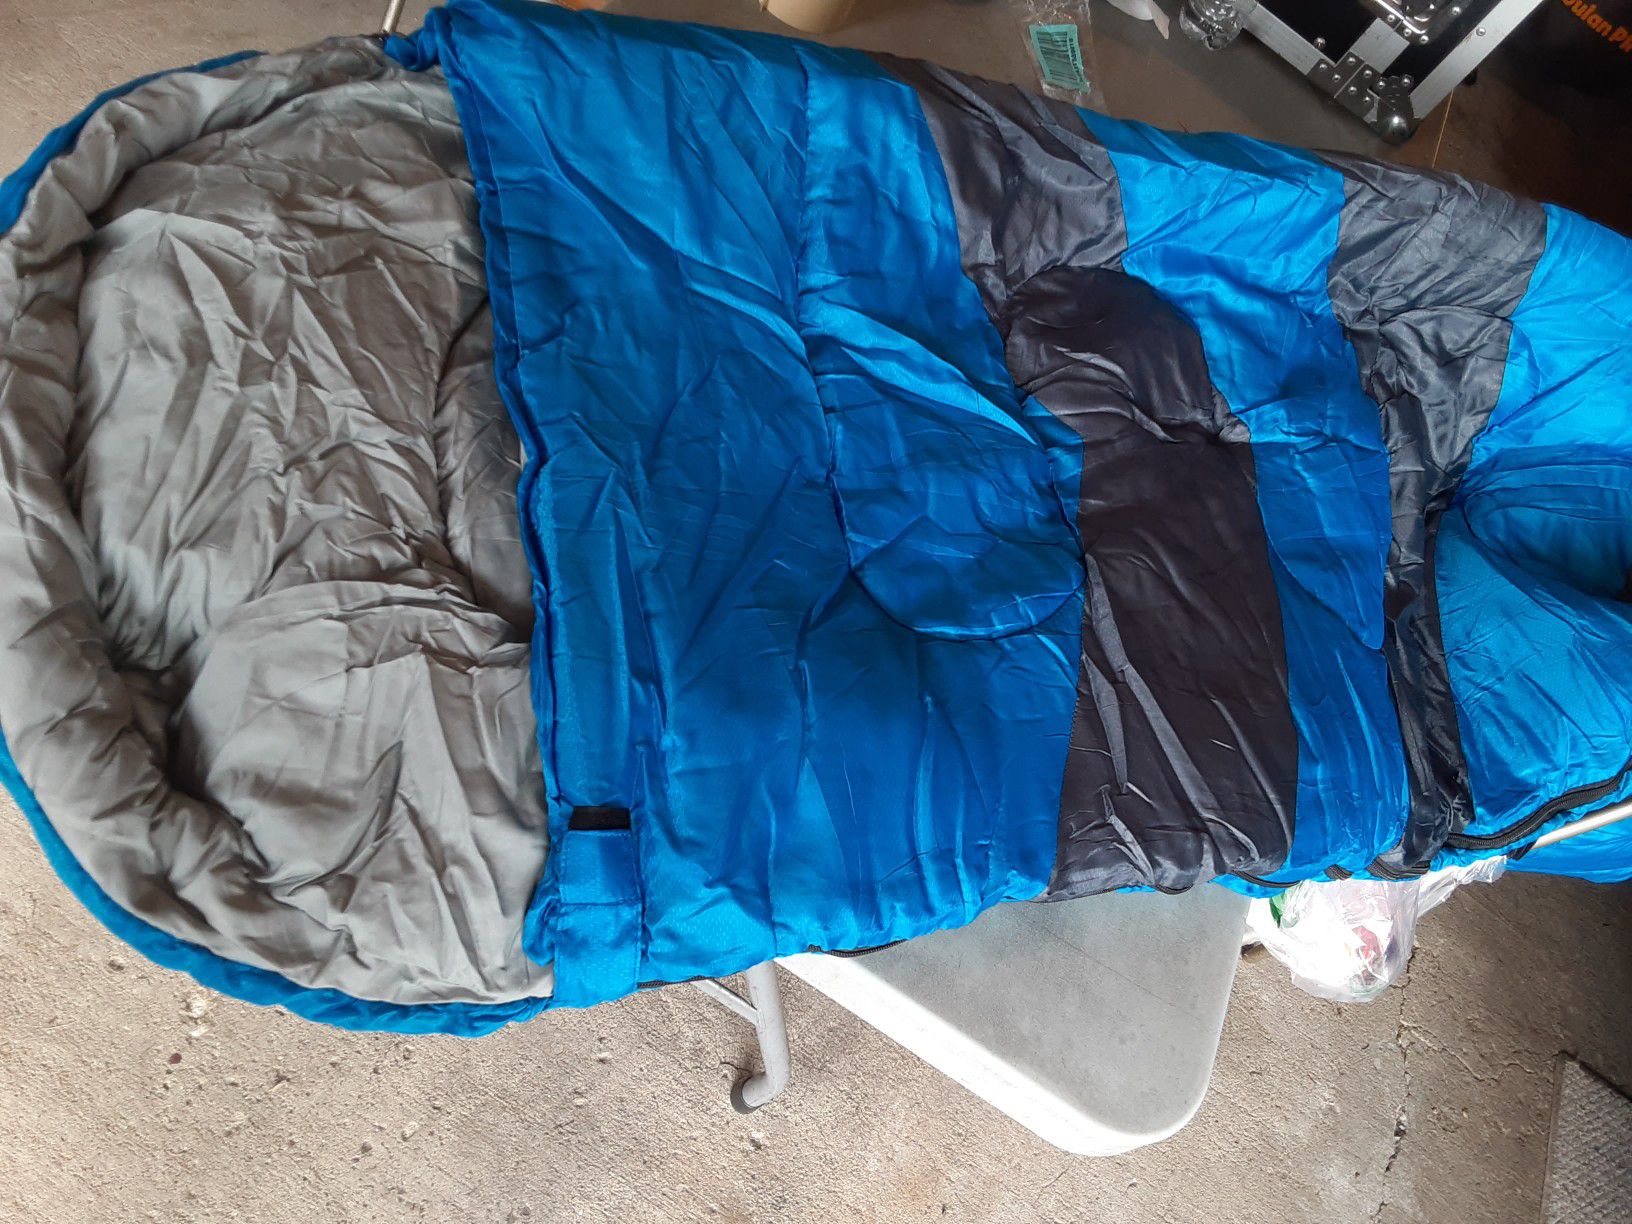 NEW Camping sleeping bag